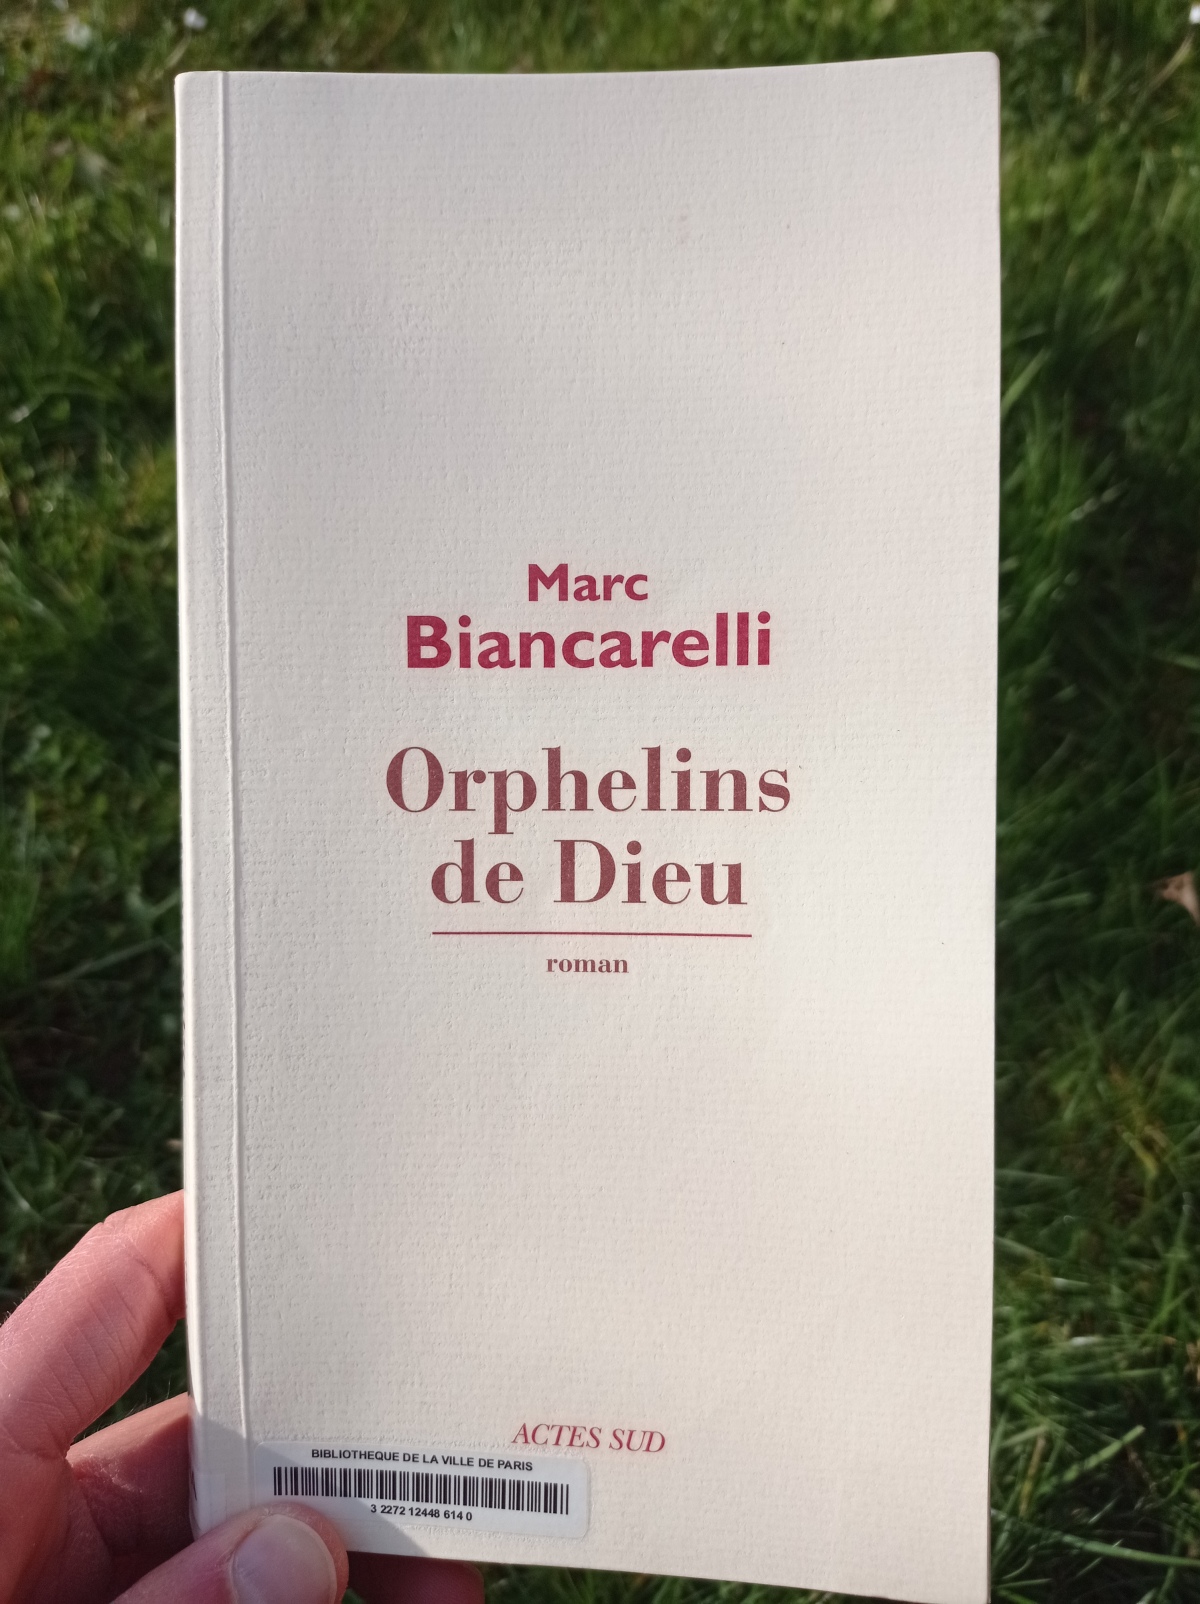 Orphelins de Dieux / Marc Biancarelli